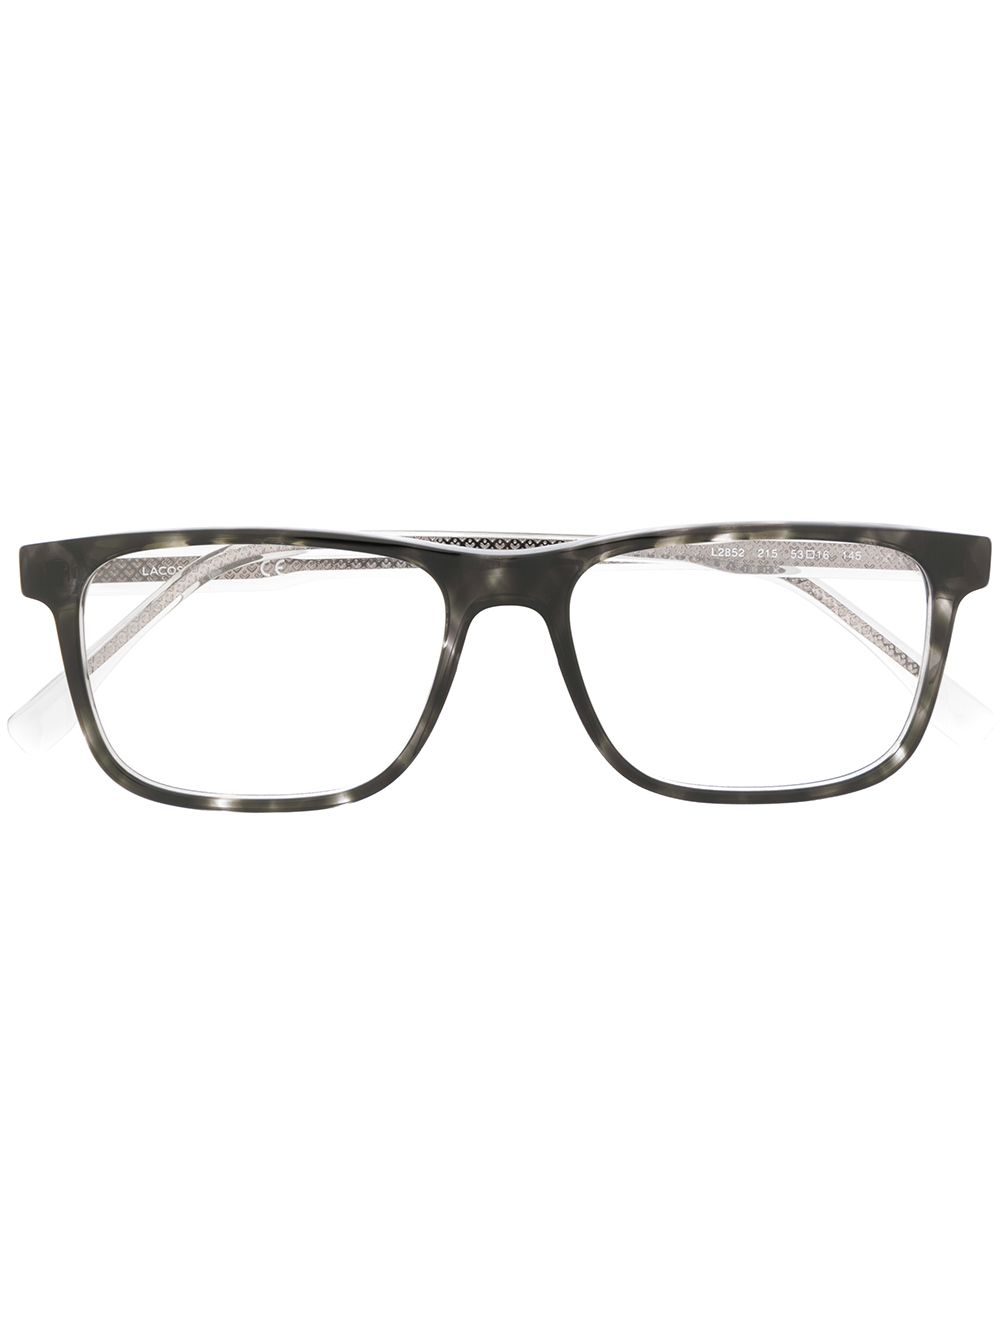 фото Lacoste очки в квадратной оправе черепаховой расцветки